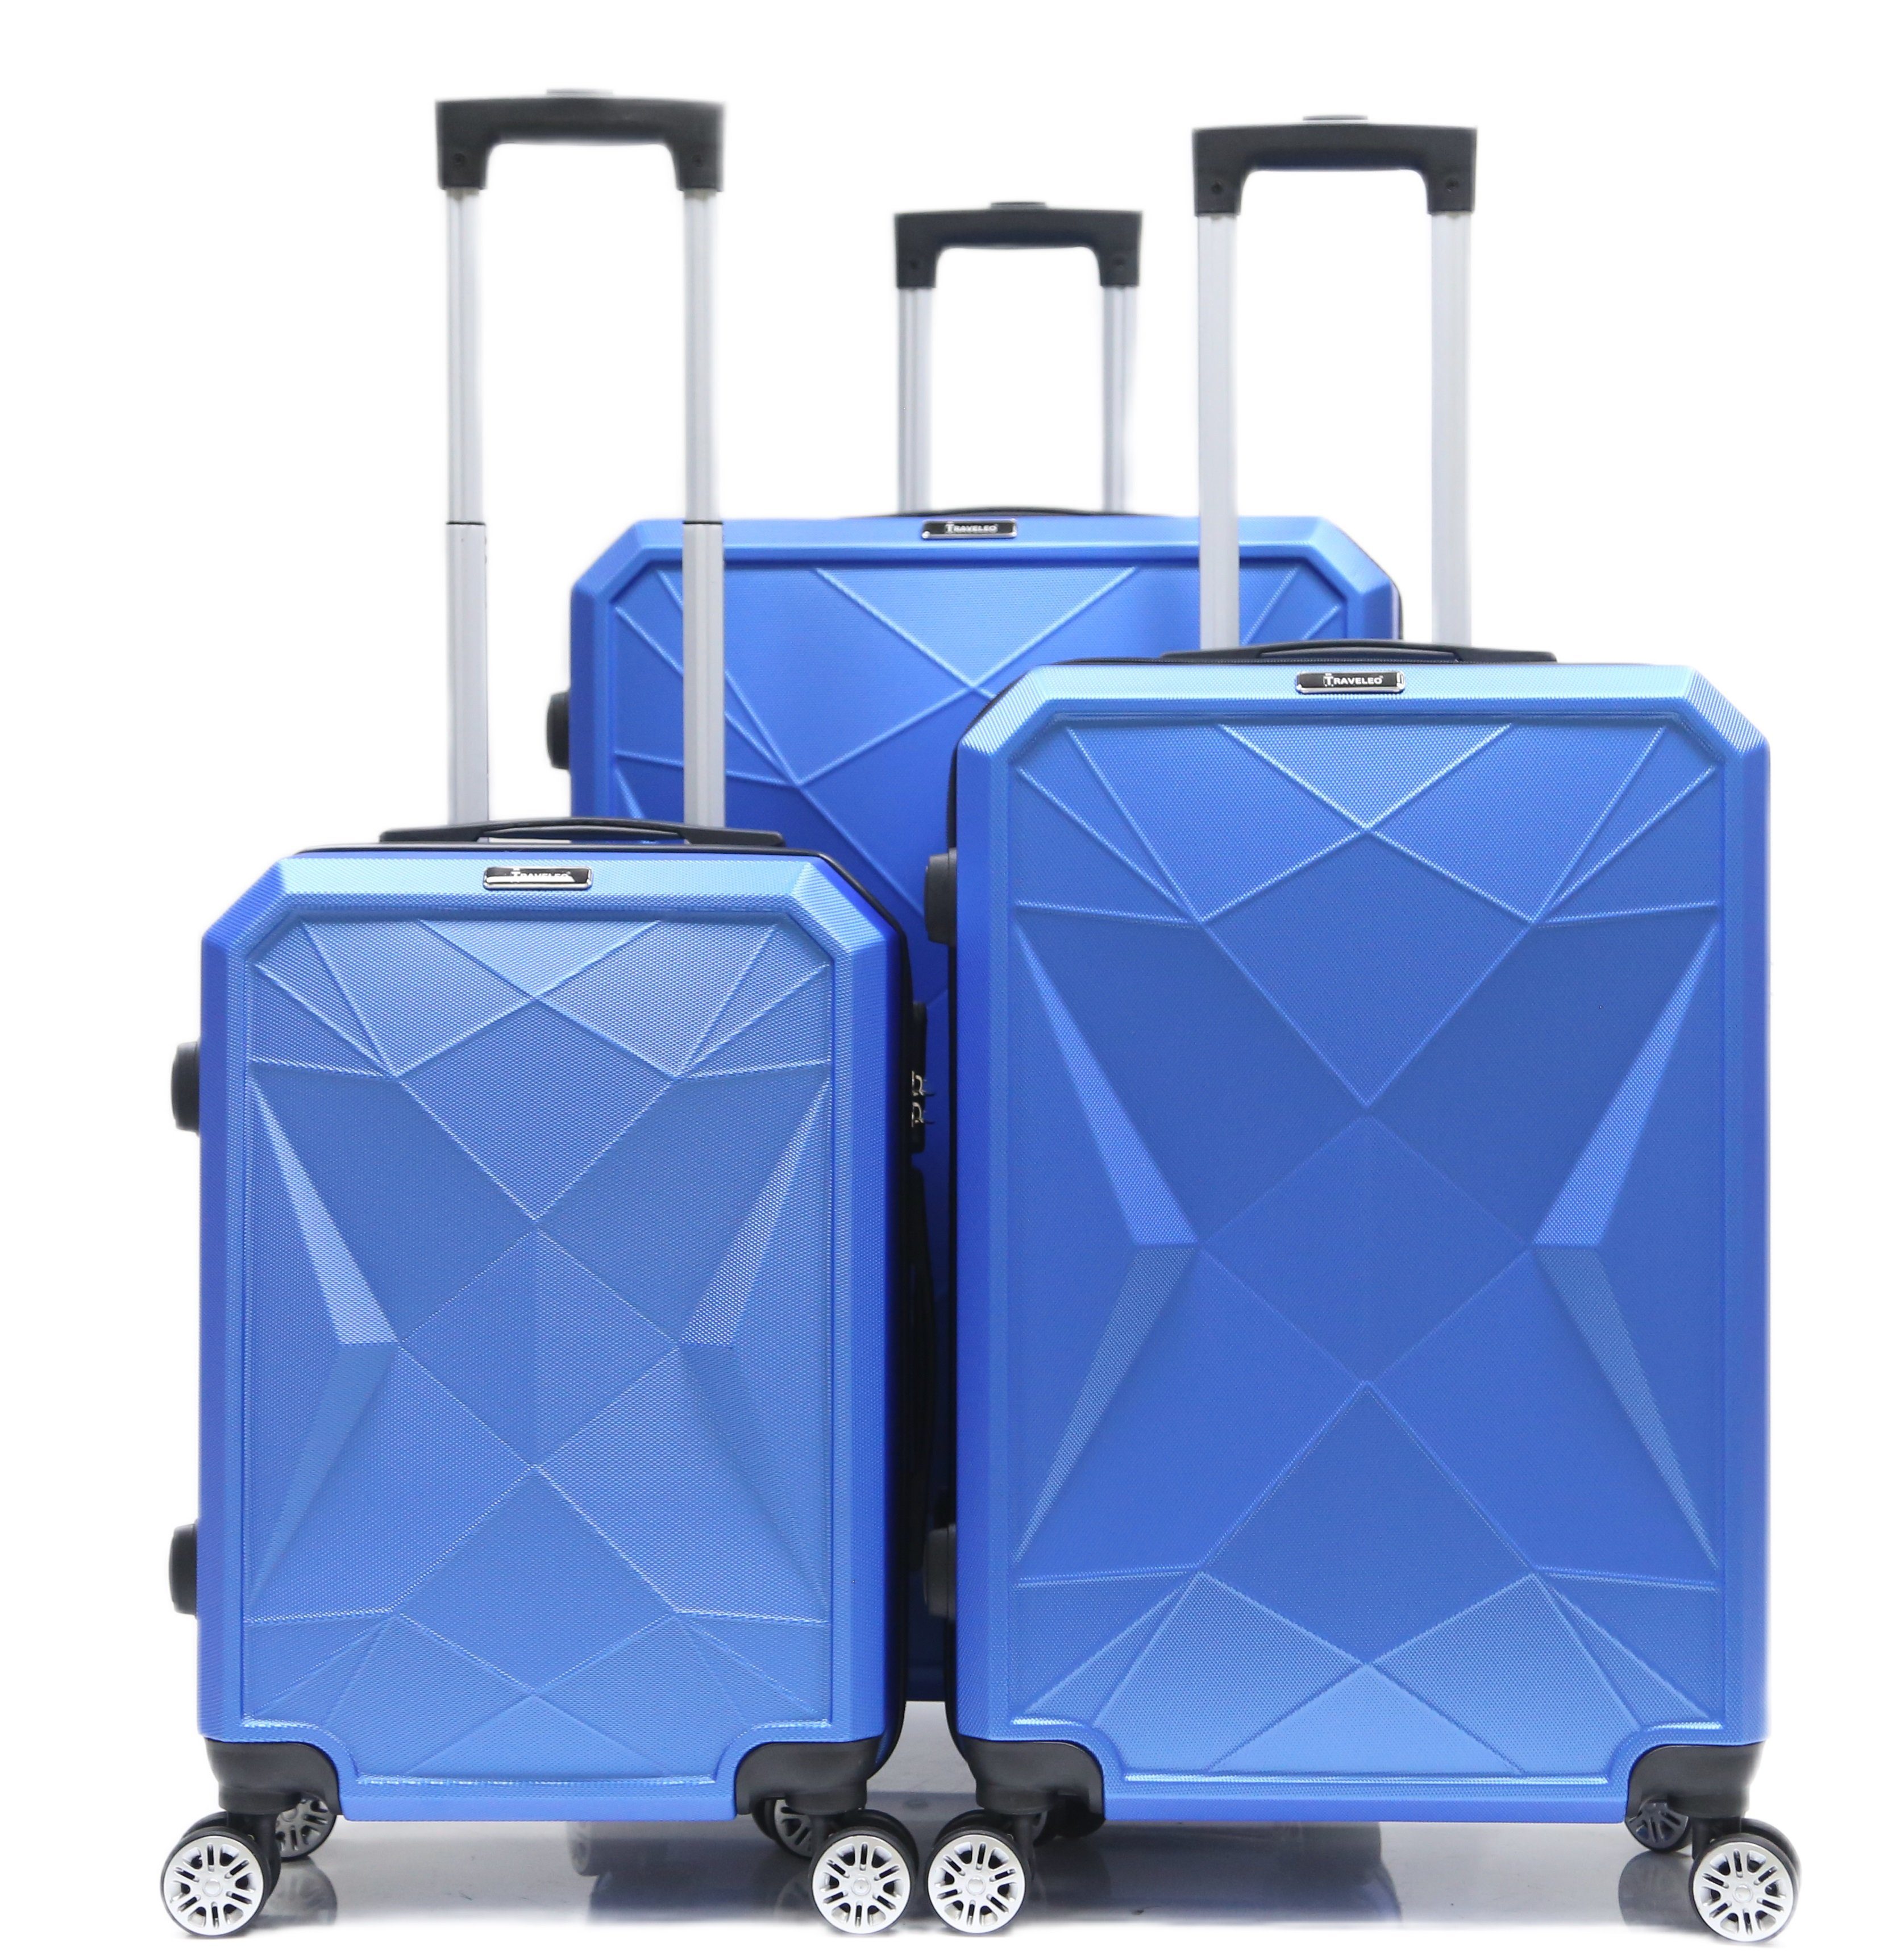 Cheffinger Kofferset Reisekoffer Koffer 3 tlg Hartschale Handgepäck Gepäck Reisetasche Blau